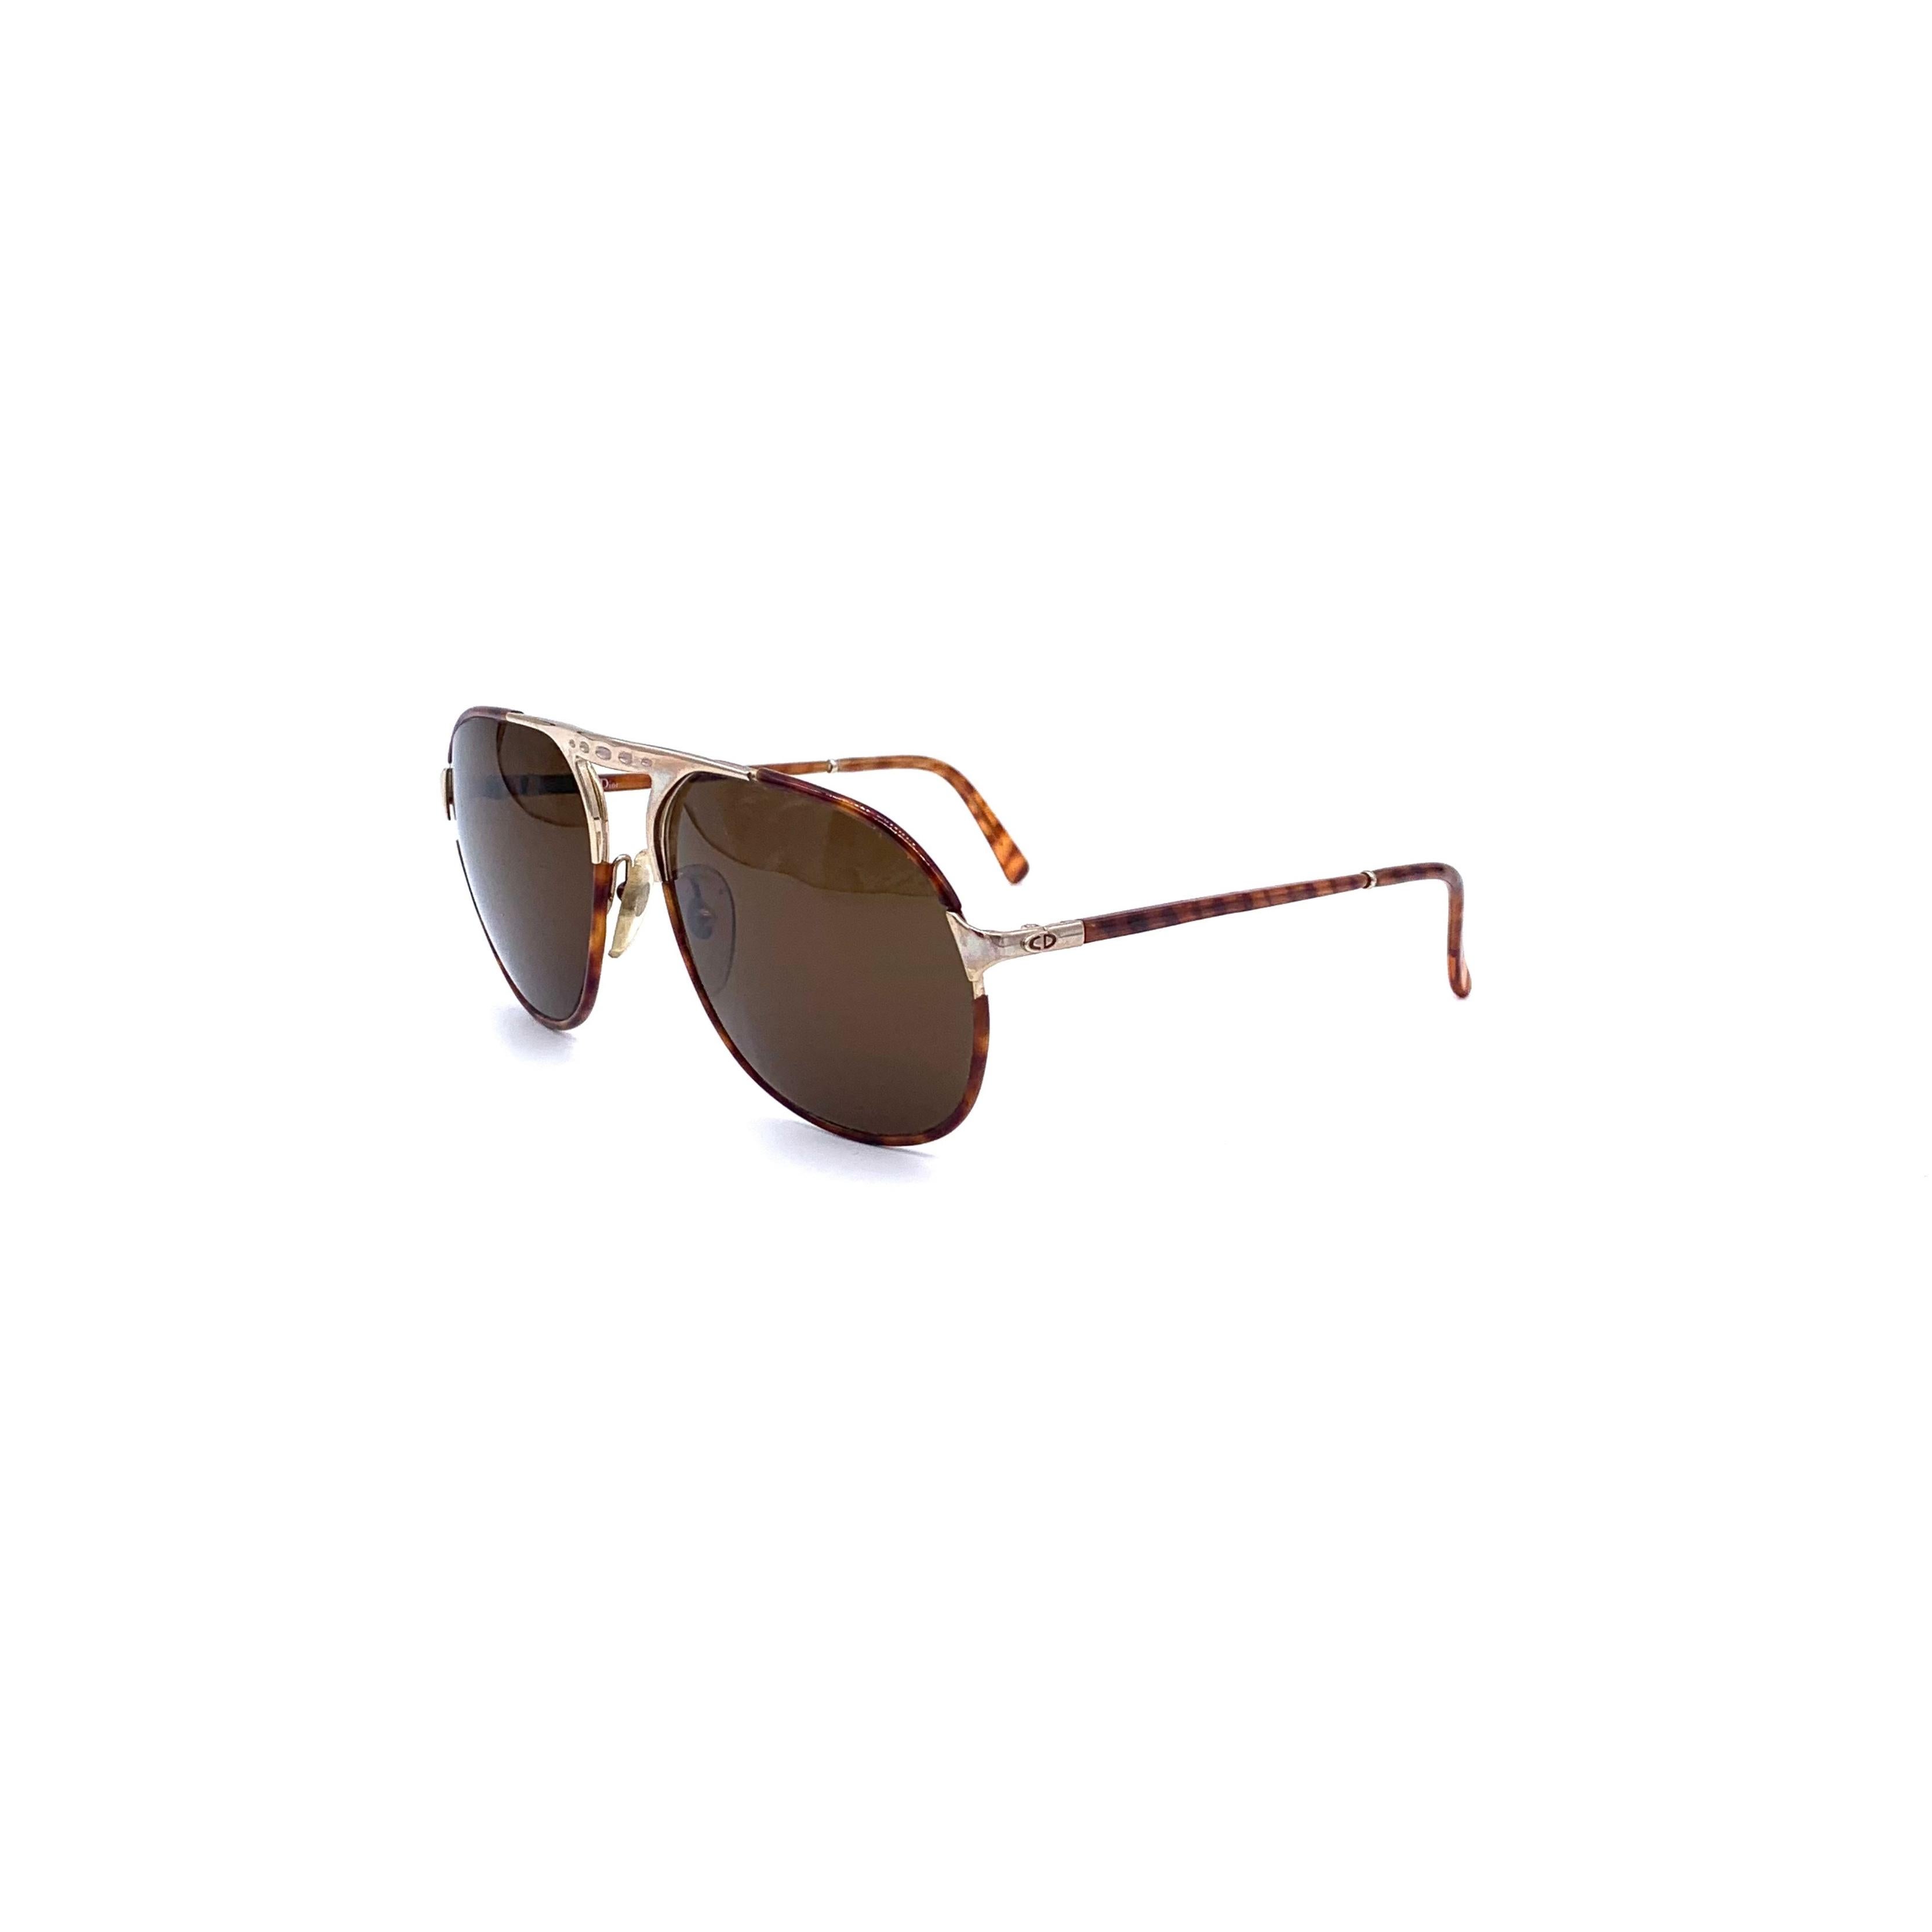 Découvrez le style rétro des lunettes de soleil Dior Aviator. Dotées d'une silhouette aviateur classique avec des verres bruns, d'une monture en acétate effet écaille et d'un pont en métal doré, ces lunettes de soleil sont idéales pour obtenir un